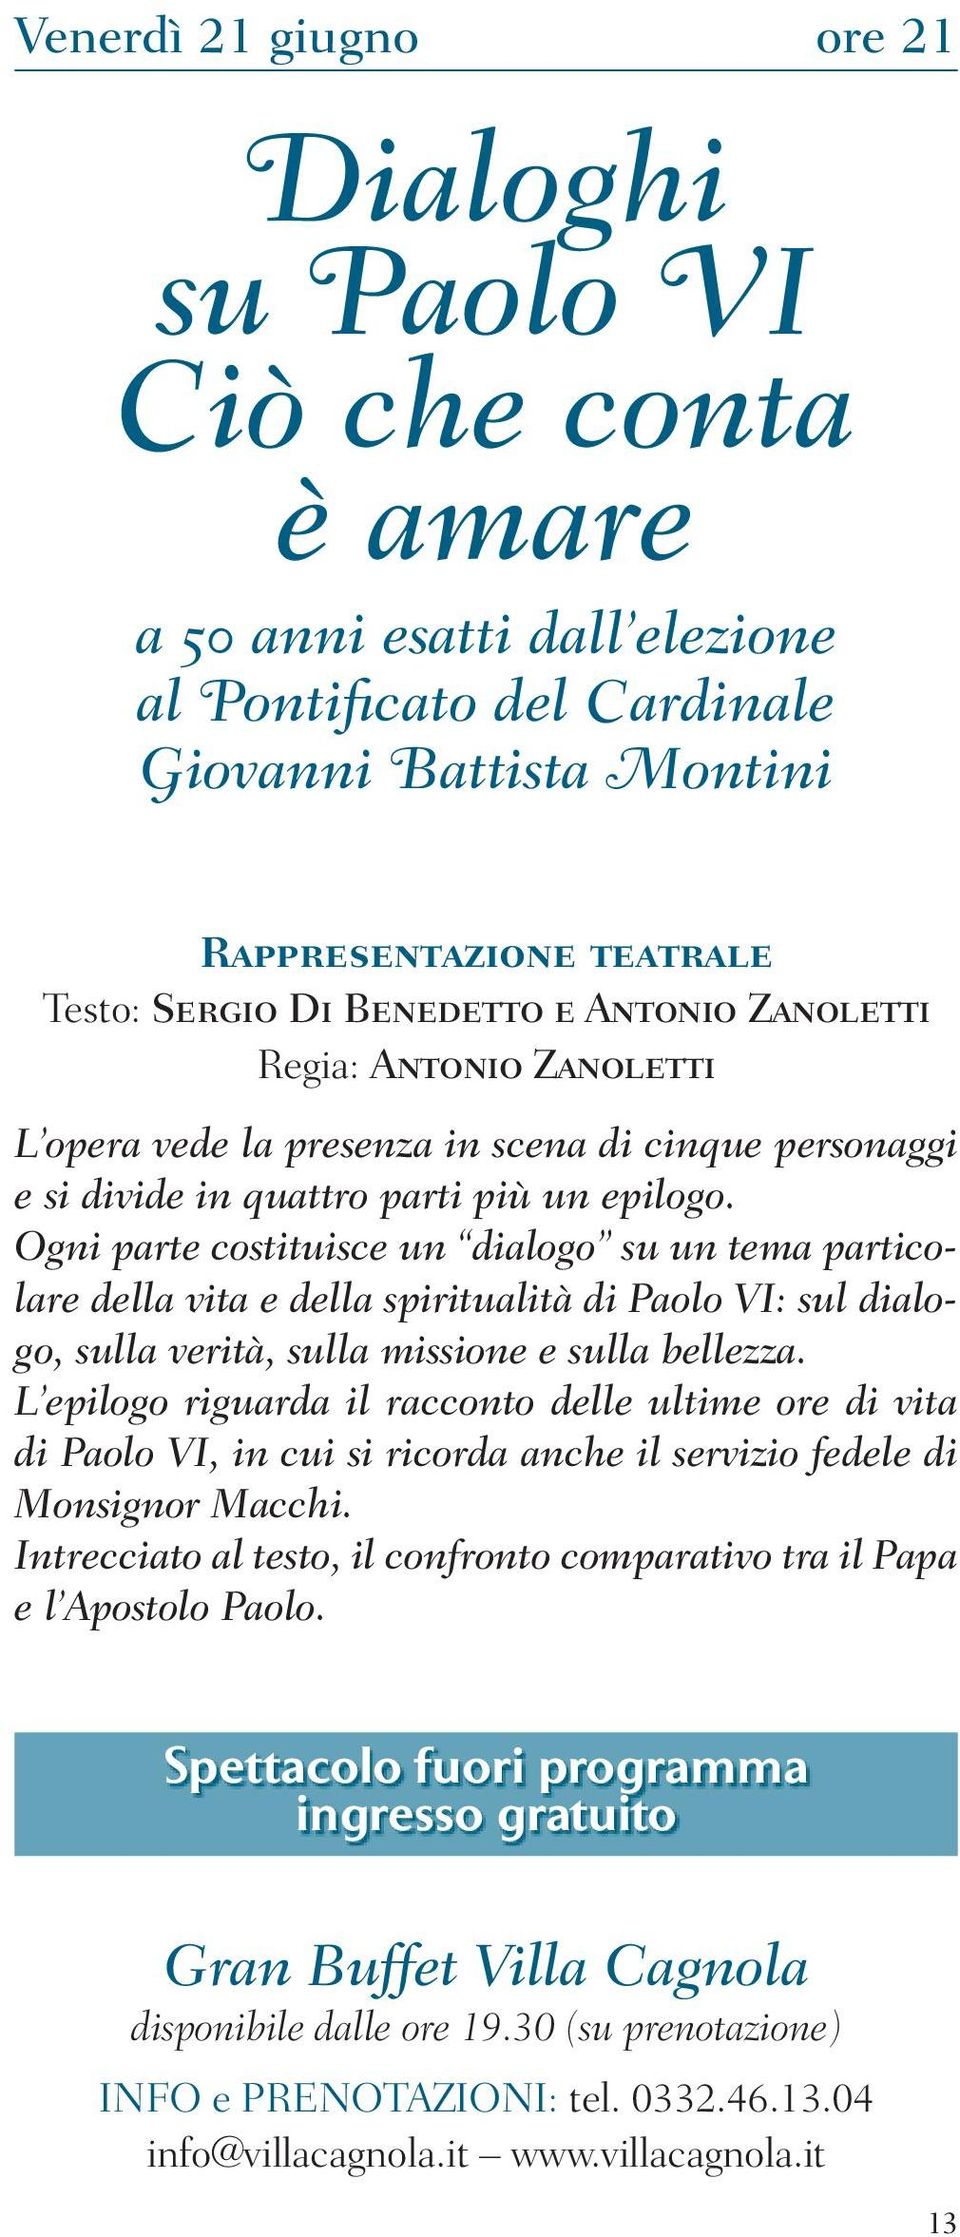 Ogni parte costituisce un dialogo su un tema particolare della vita e della spiritualità di Paolo VI: sul dialogo, sulla verità, sulla missione e sulla bellezza.